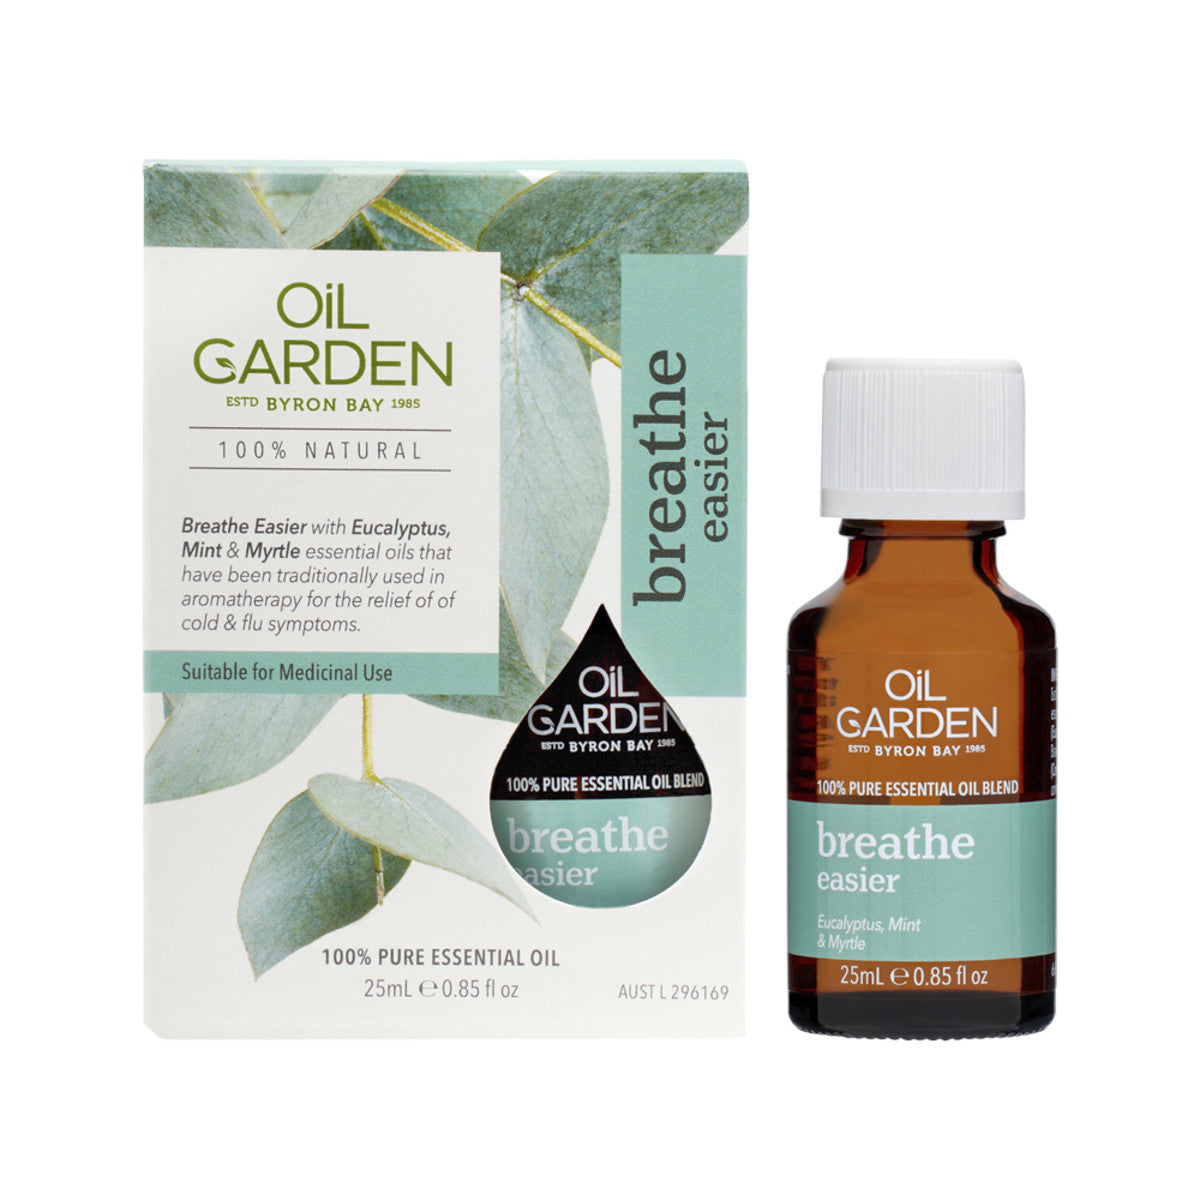 Oil Garden Essential Oil Blend Breathe Easier 25ml